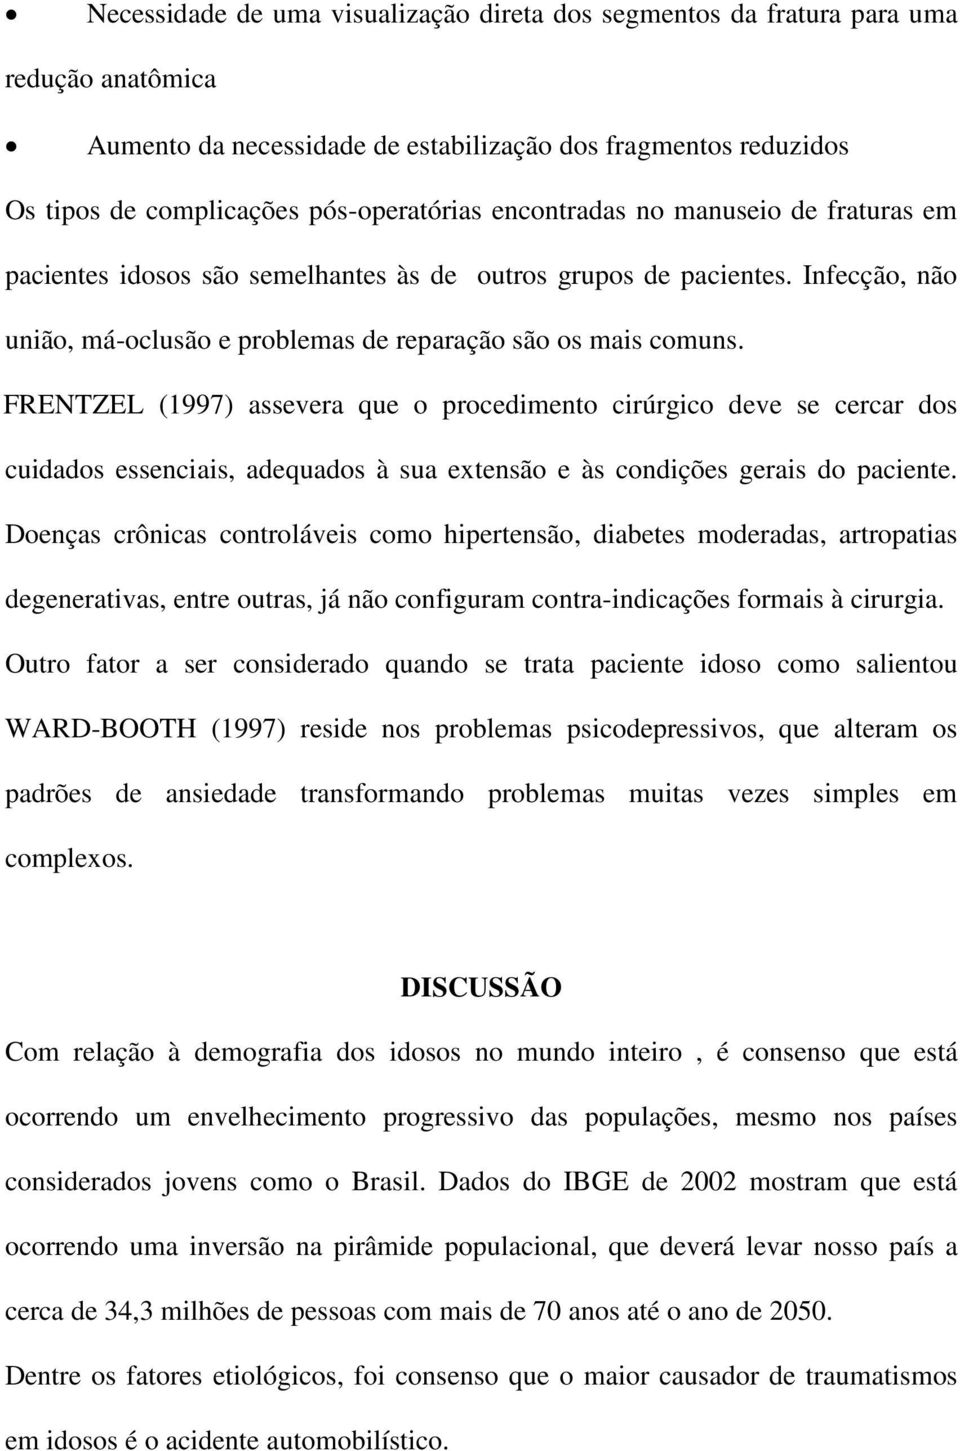 FRENTZEL (1997) assevera que o procedimento cirúrgico deve se cercar dos cuidados essenciais, adequados à sua extensão e às condições gerais do paciente.